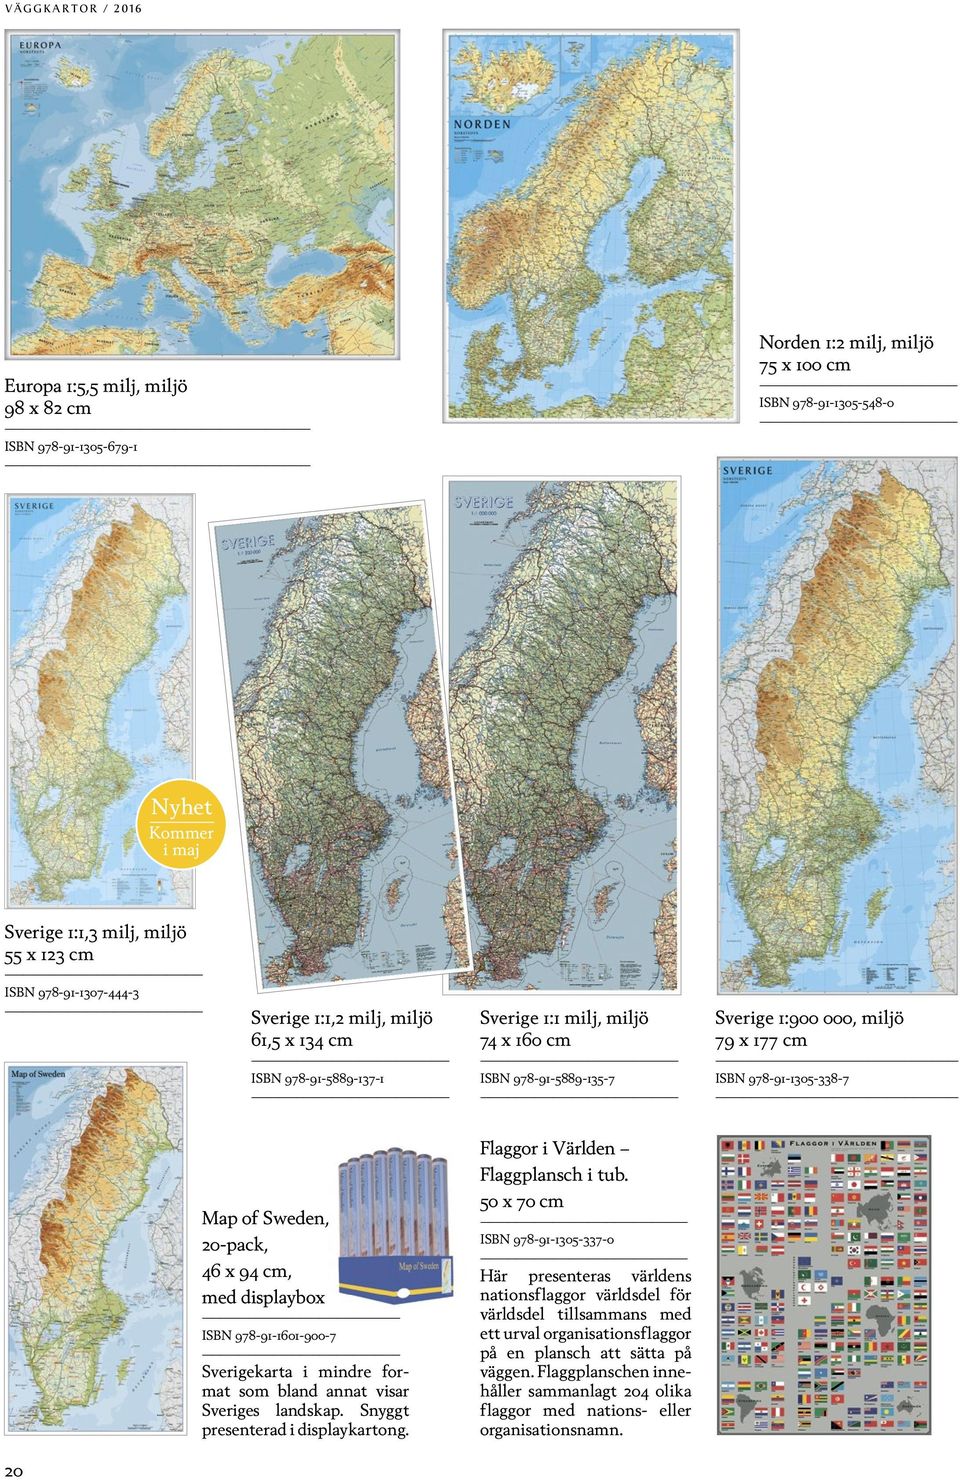 Map of Sweden, 20-pack, 46 x 94 cm, med displaybox ISBN 978-91-1601-900-7 Sverigekarta i mindre format som bland annat visar Sveriges landskap. Snyggt presenterad i displaykartong.